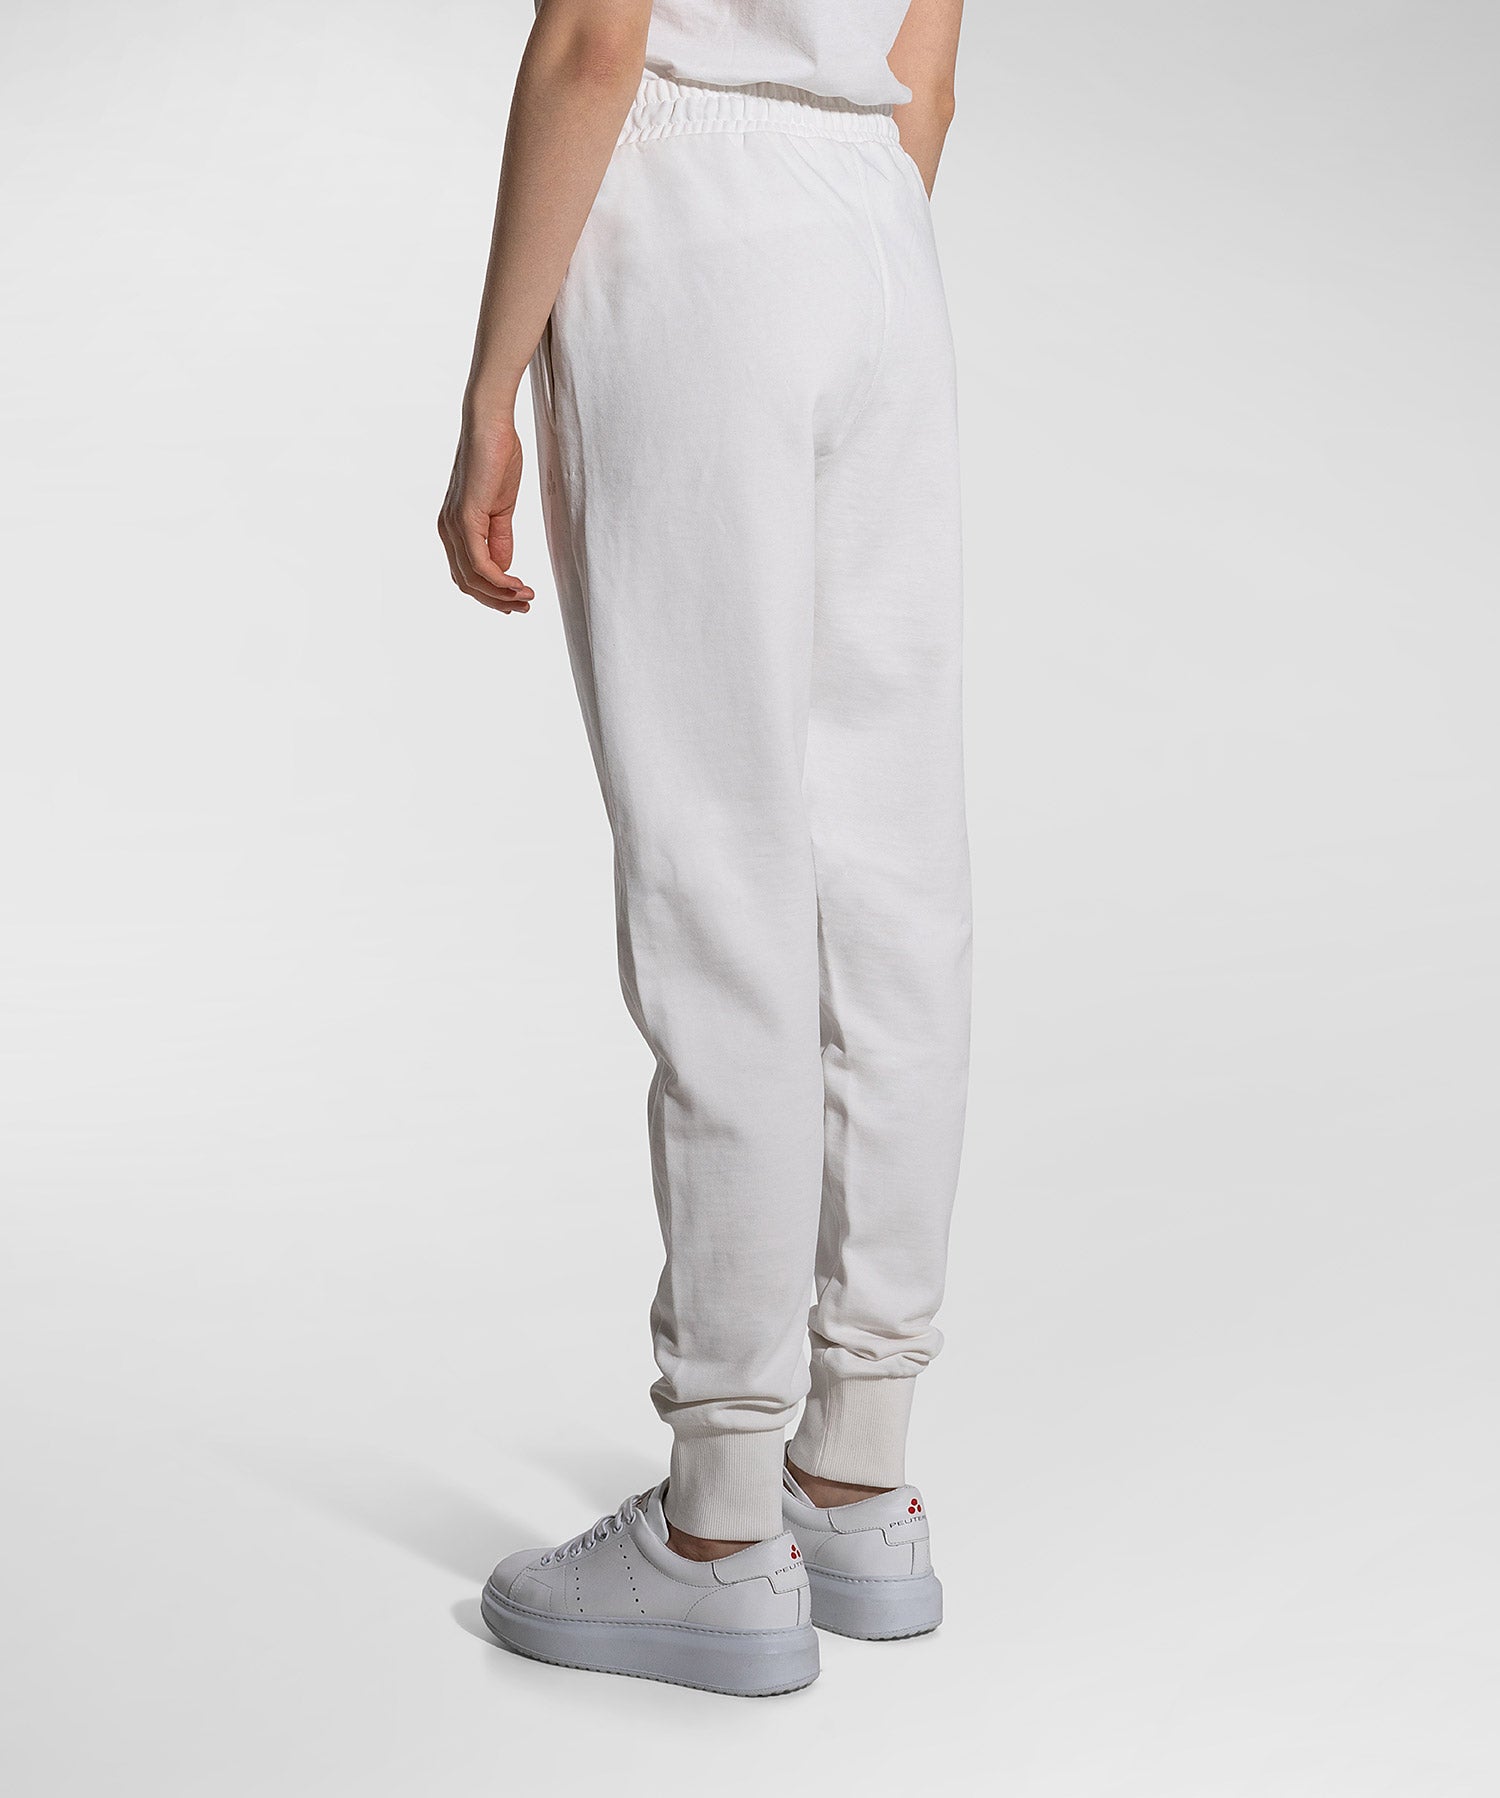 Pantalone Confortevoli in Felpa / Bianco - Ideal Moda